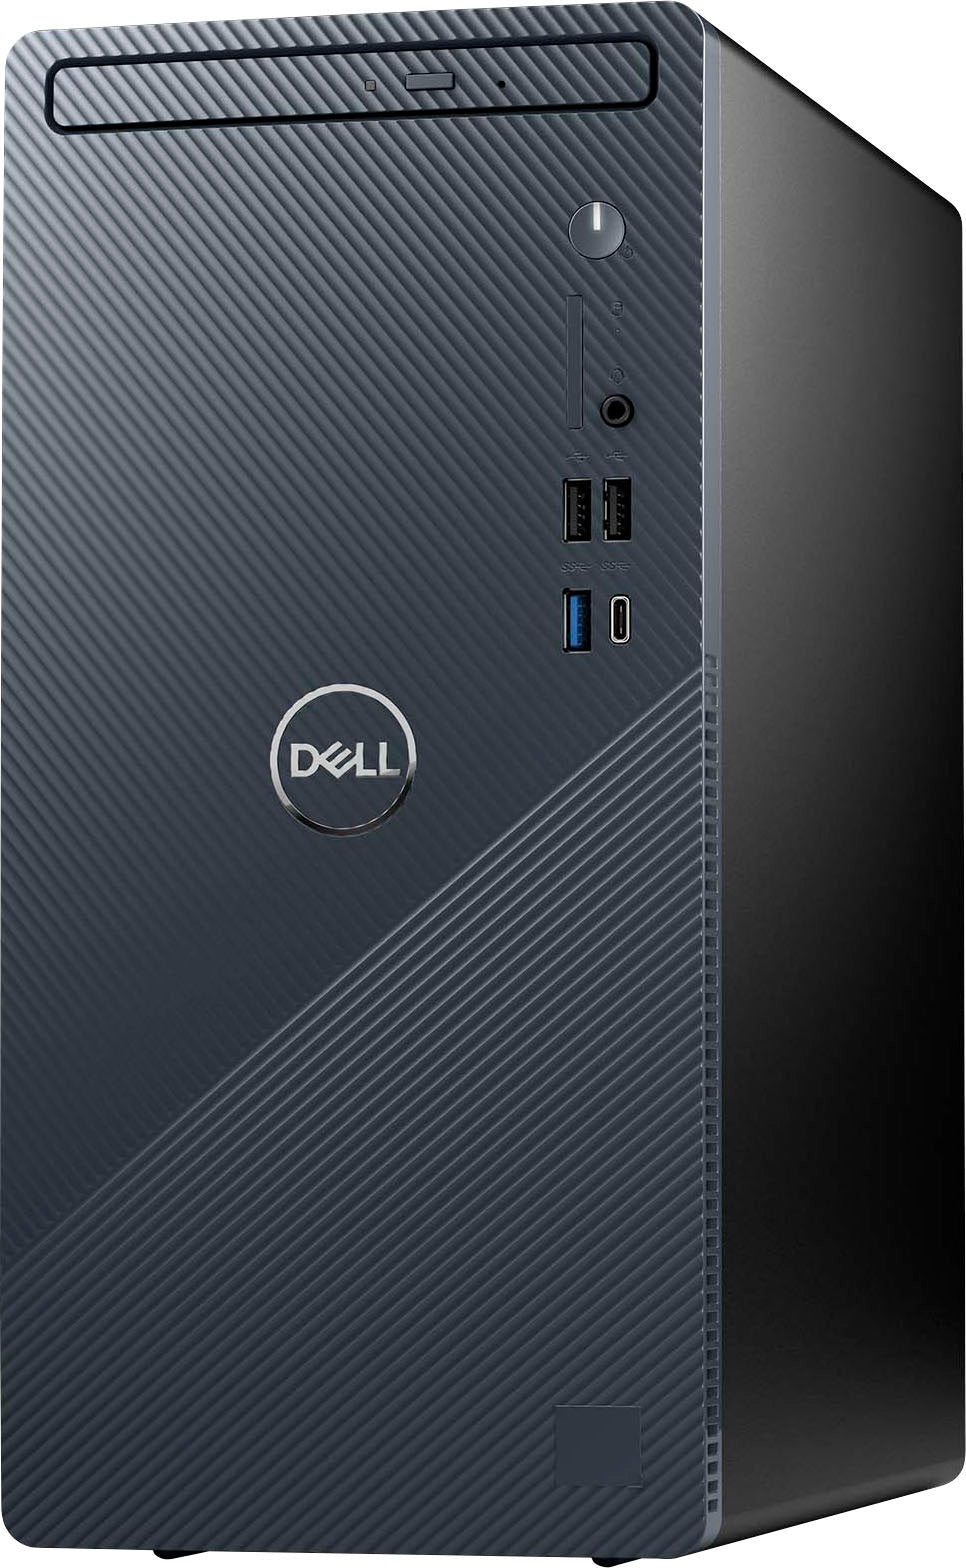 Dell - Dell- Inspiron Desktop (3030) - Intel Core i7 processor (14 gen) - 16GB Memory - 1TB SSD - Mist Blue_1